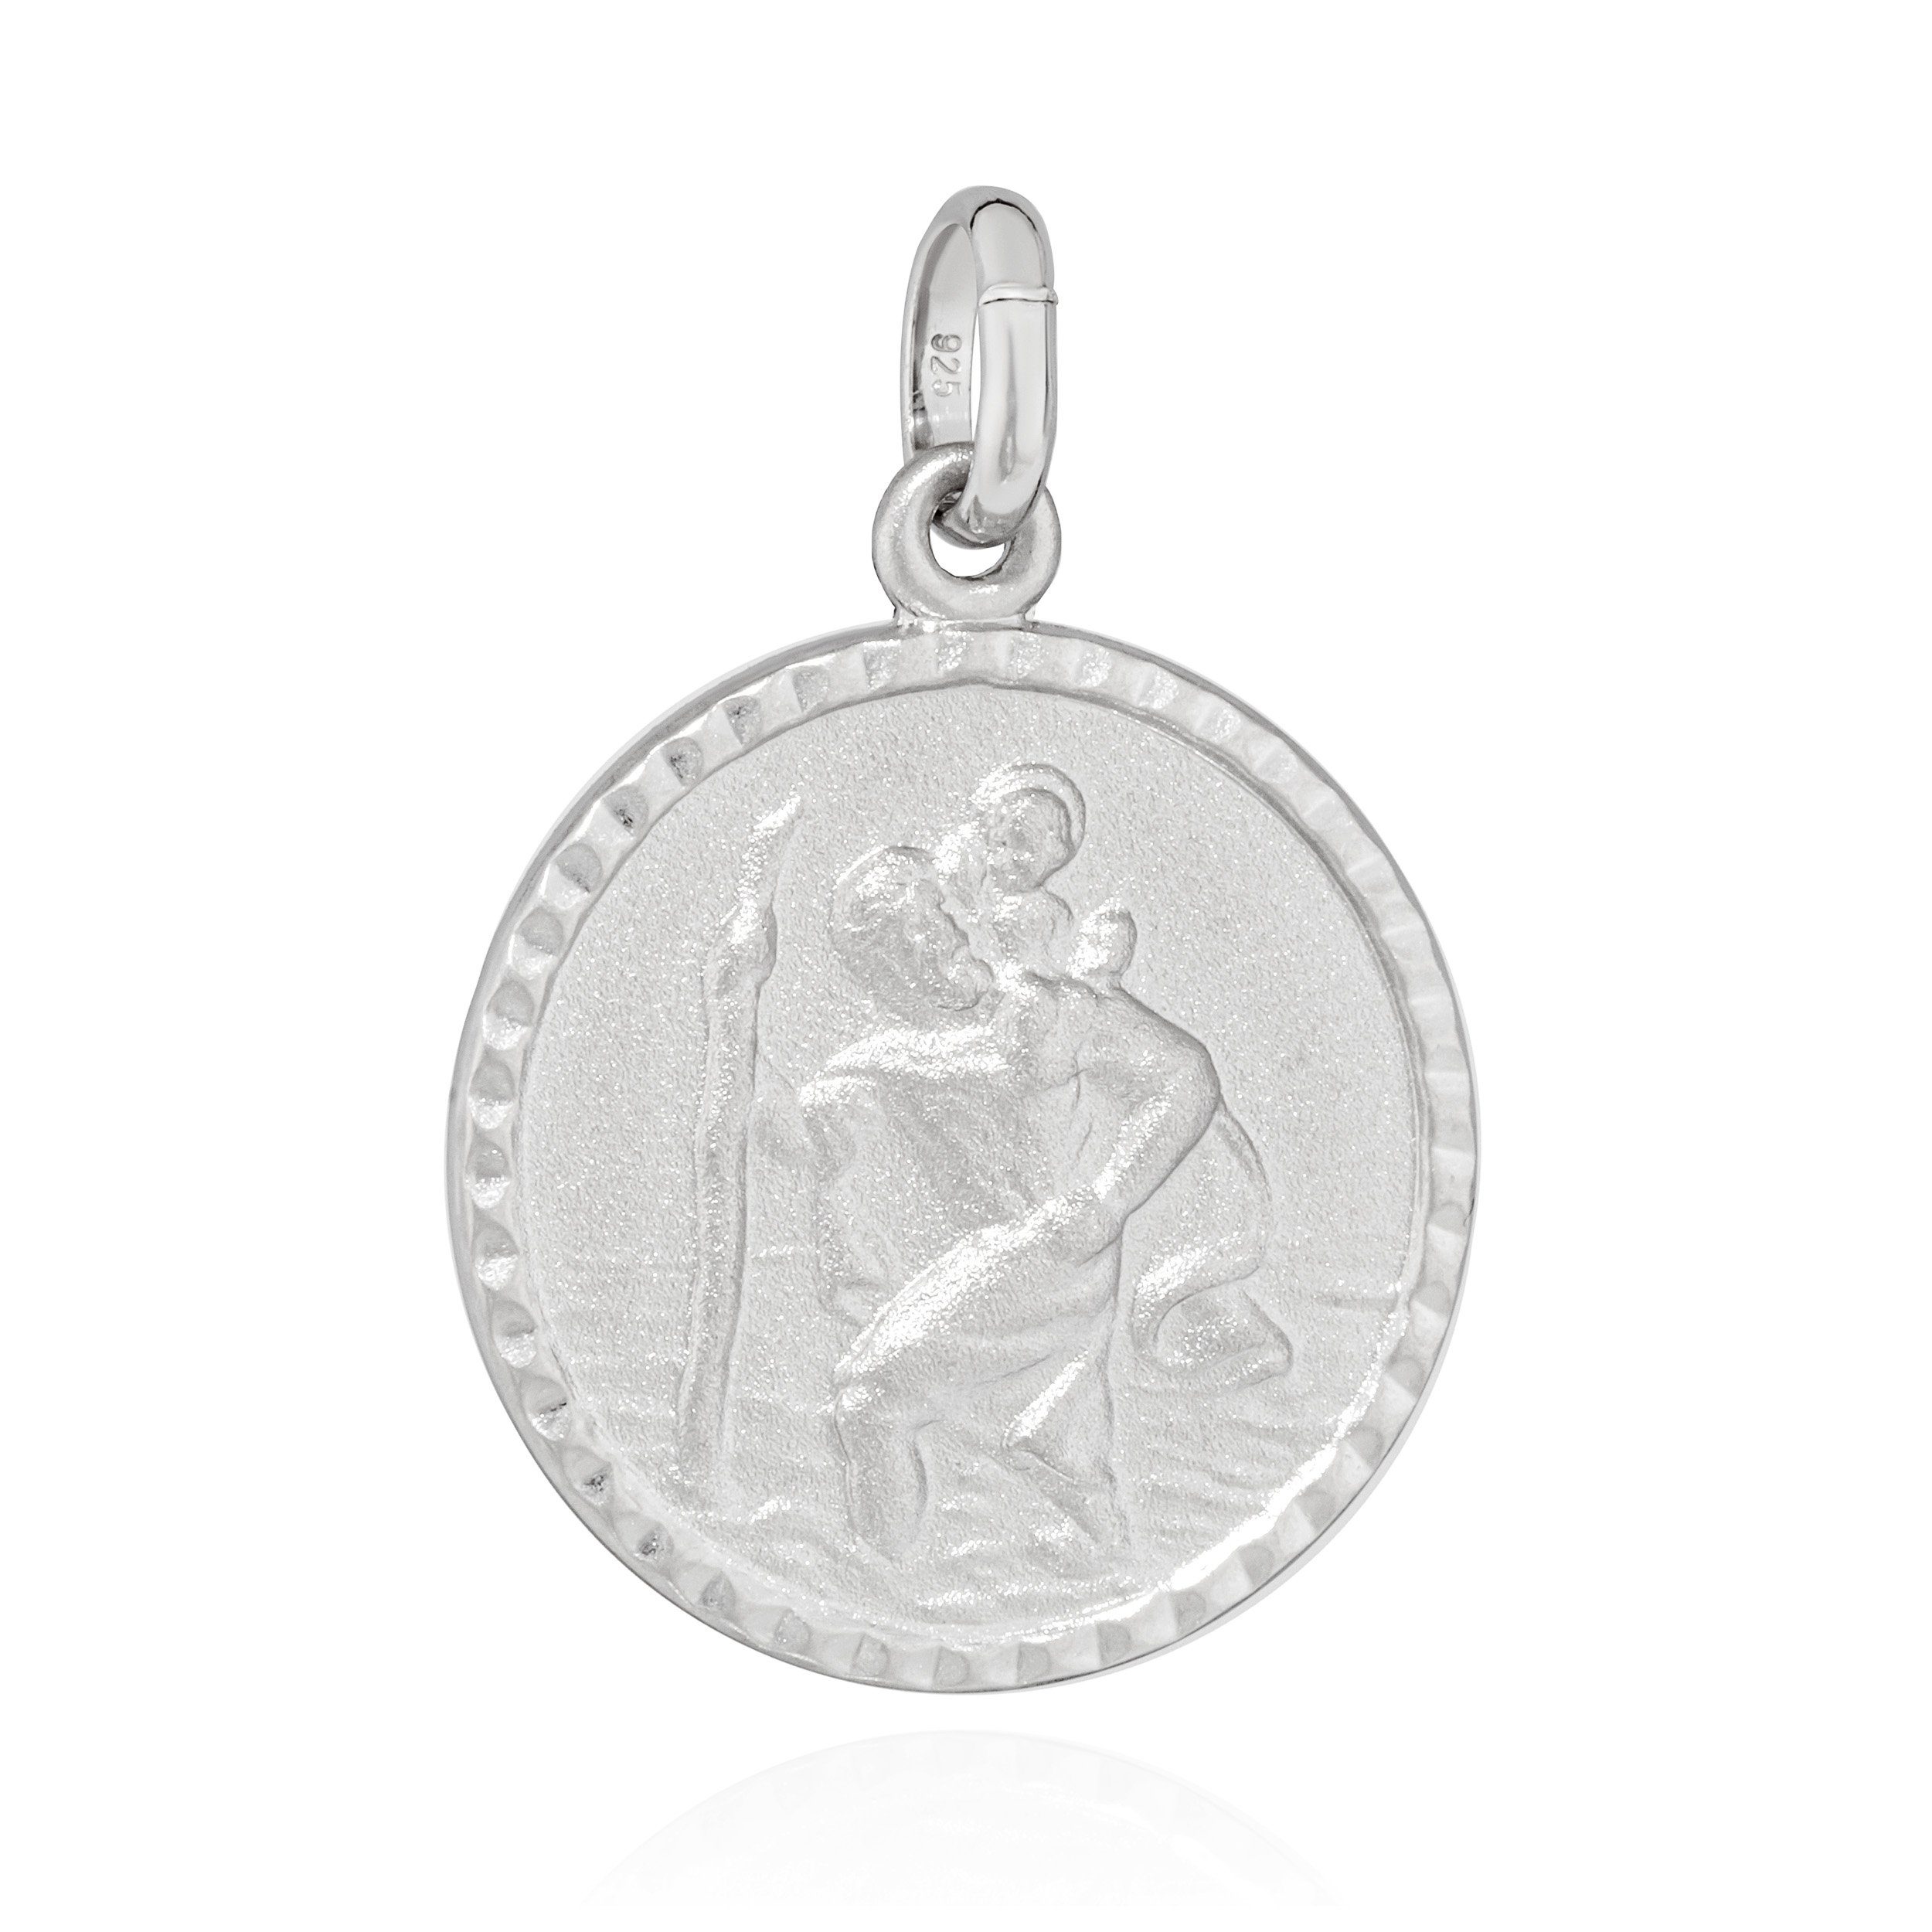 NKlaus Kettenanhänger Kettenanhäger Christophorus 925 Silber teilmatt 16mm Amulett Talisman